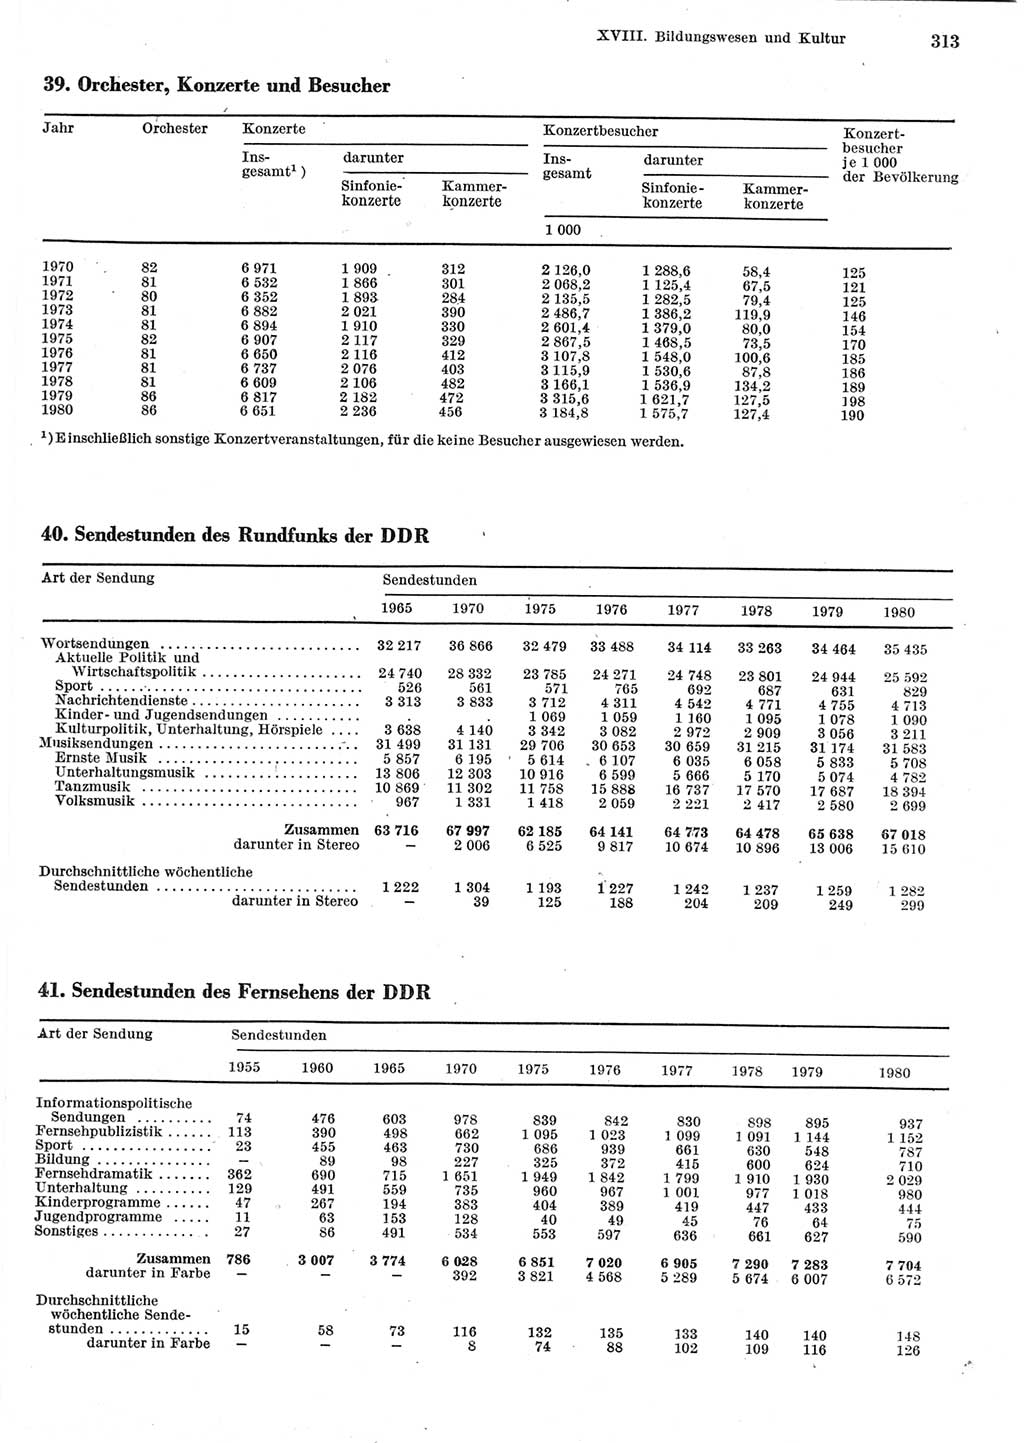 Statistisches Jahrbuch der Deutschen Demokratischen Republik (DDR) 1981, Seite 313 (Stat. Jb. DDR 1981, S. 313)